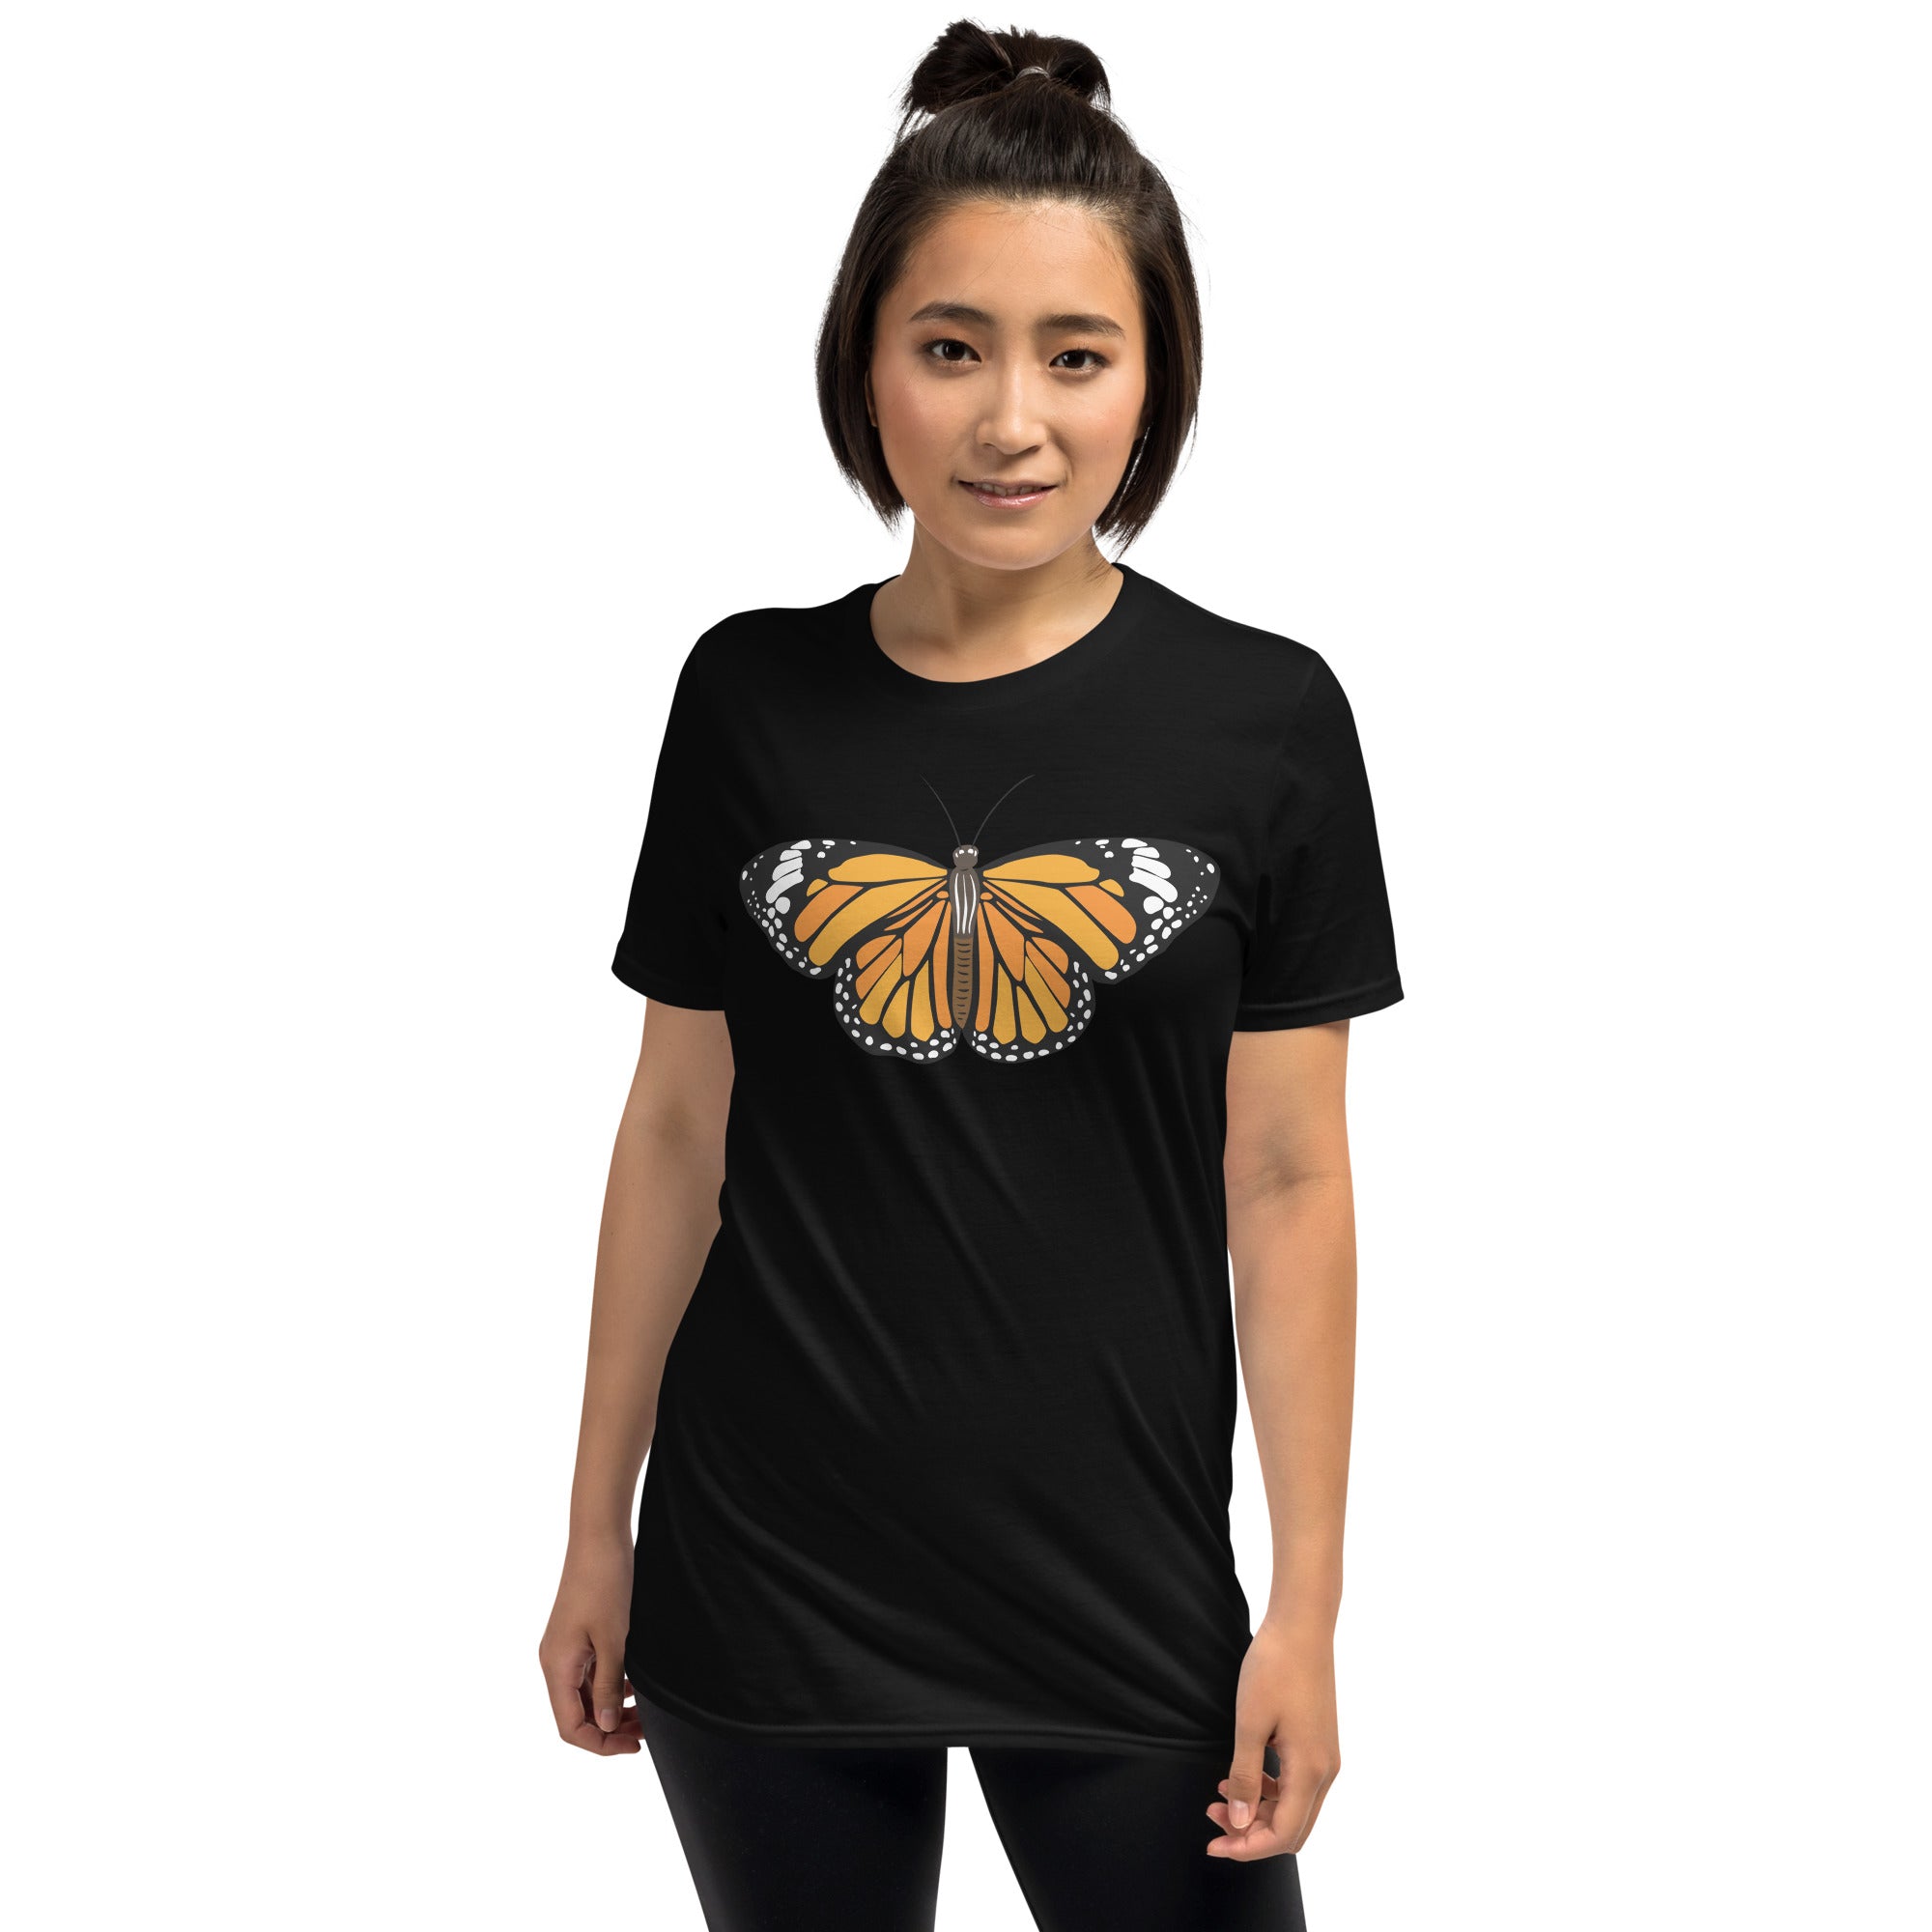 Butterfly - Short-Sleeve Unisex T-Shirt